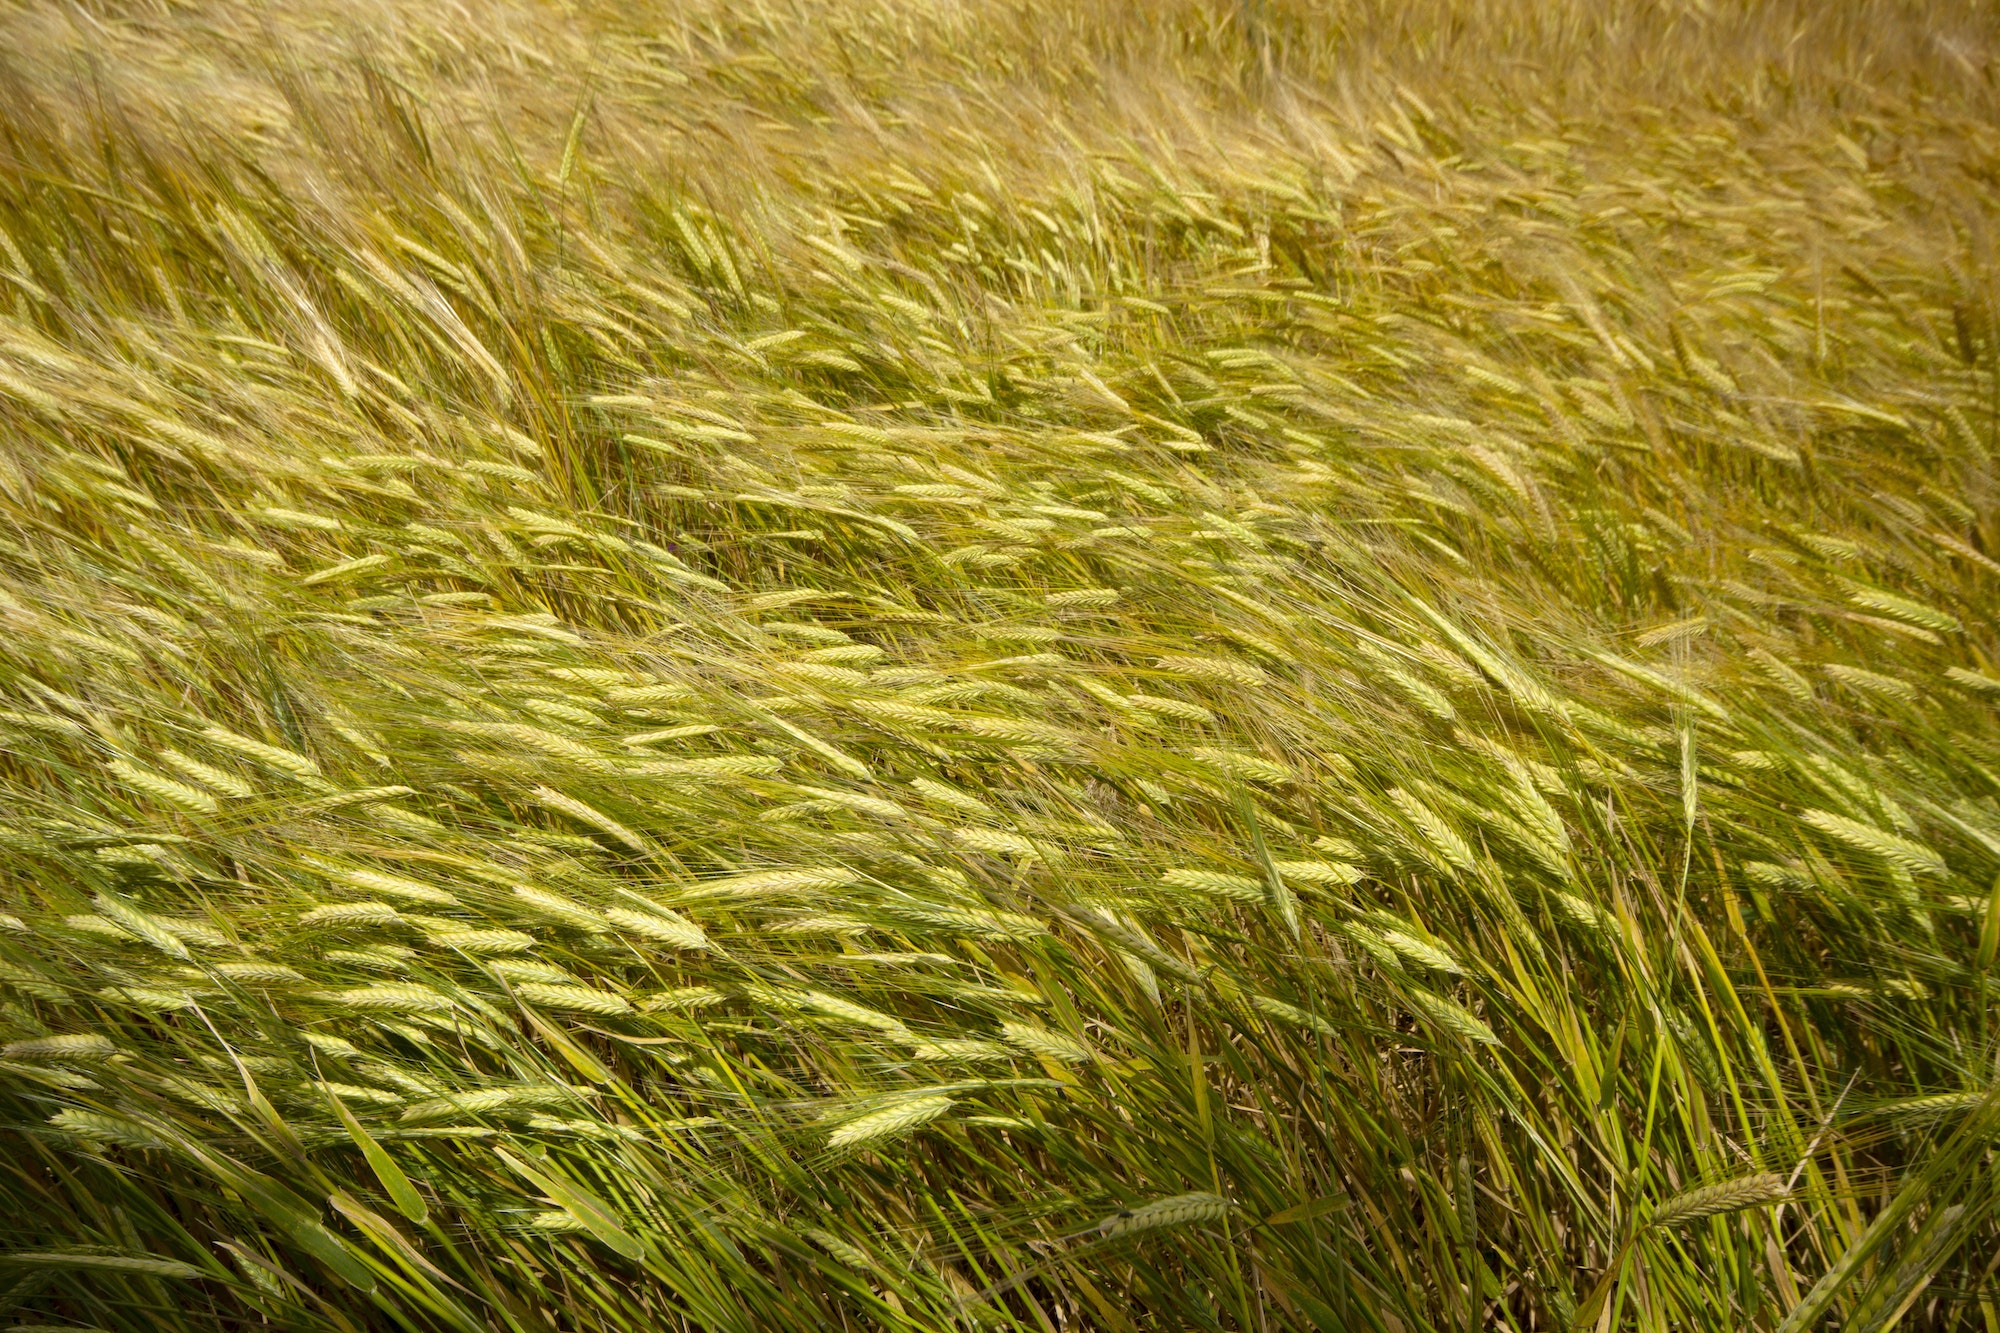 Farming. Wheat field in summer.